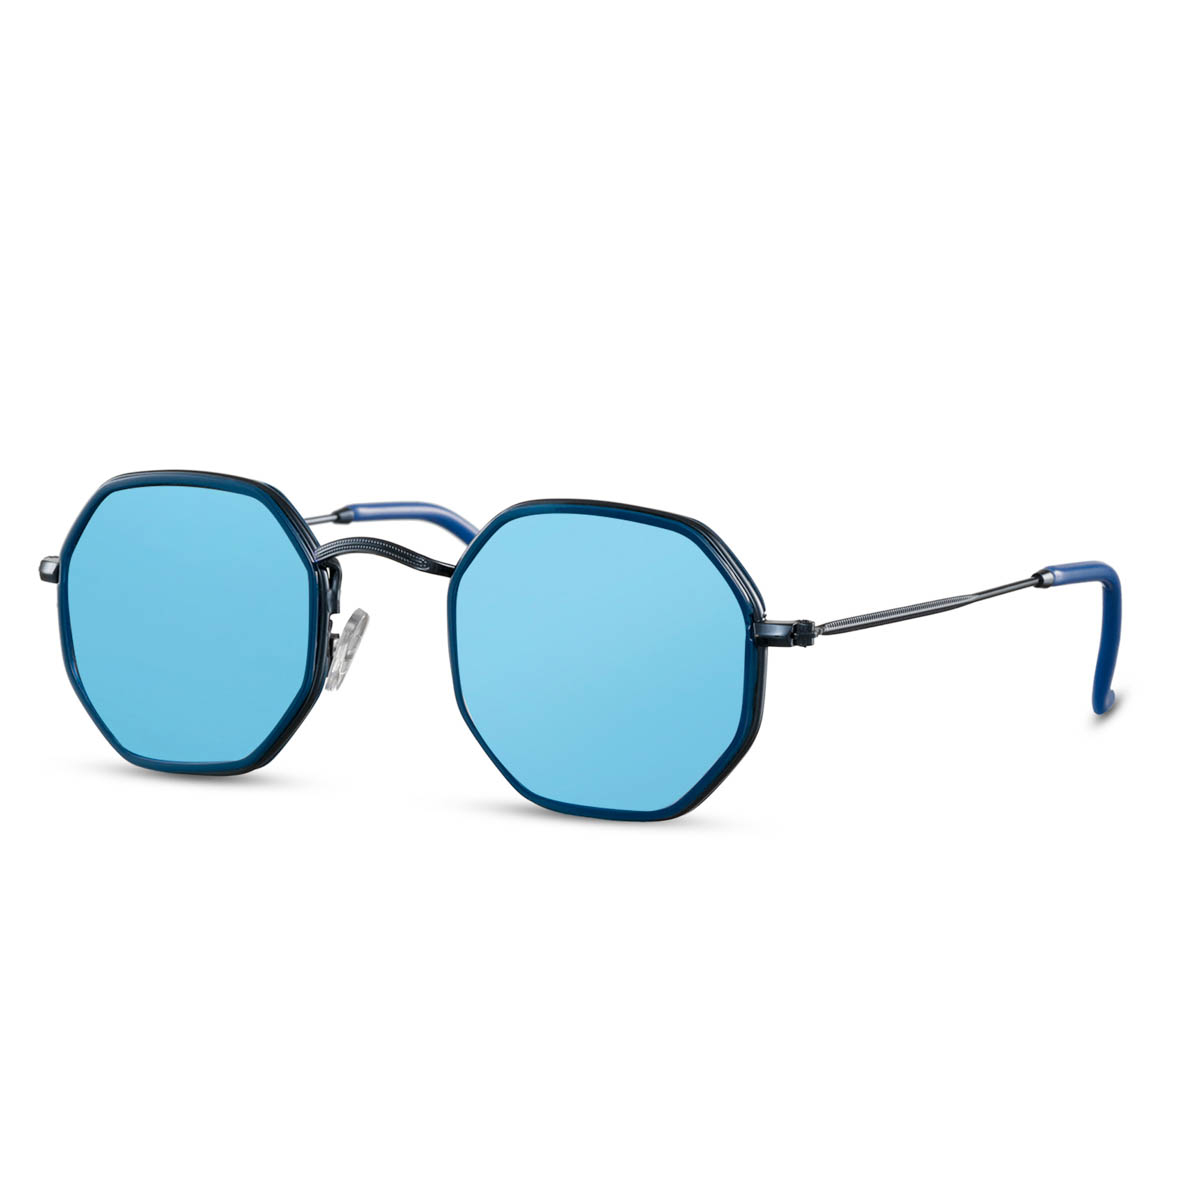 Sluneční brýle Solo Cuberound - modré